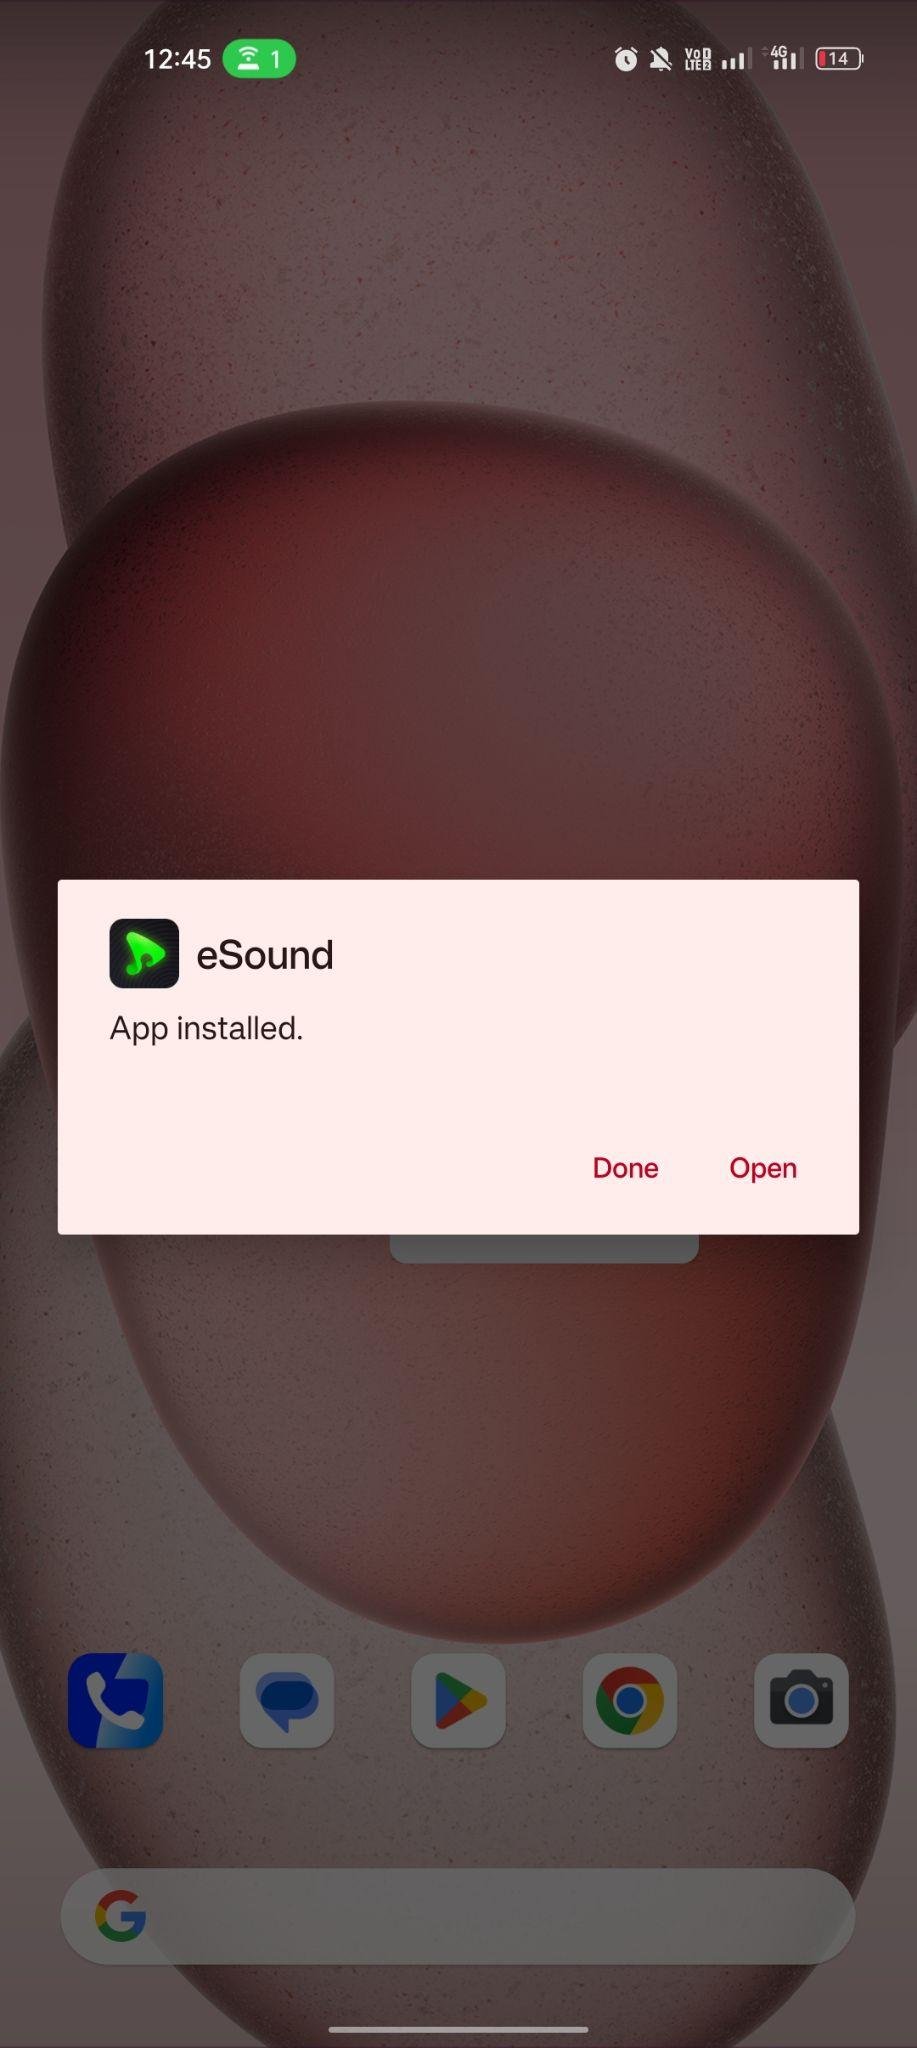 eSound apk installed